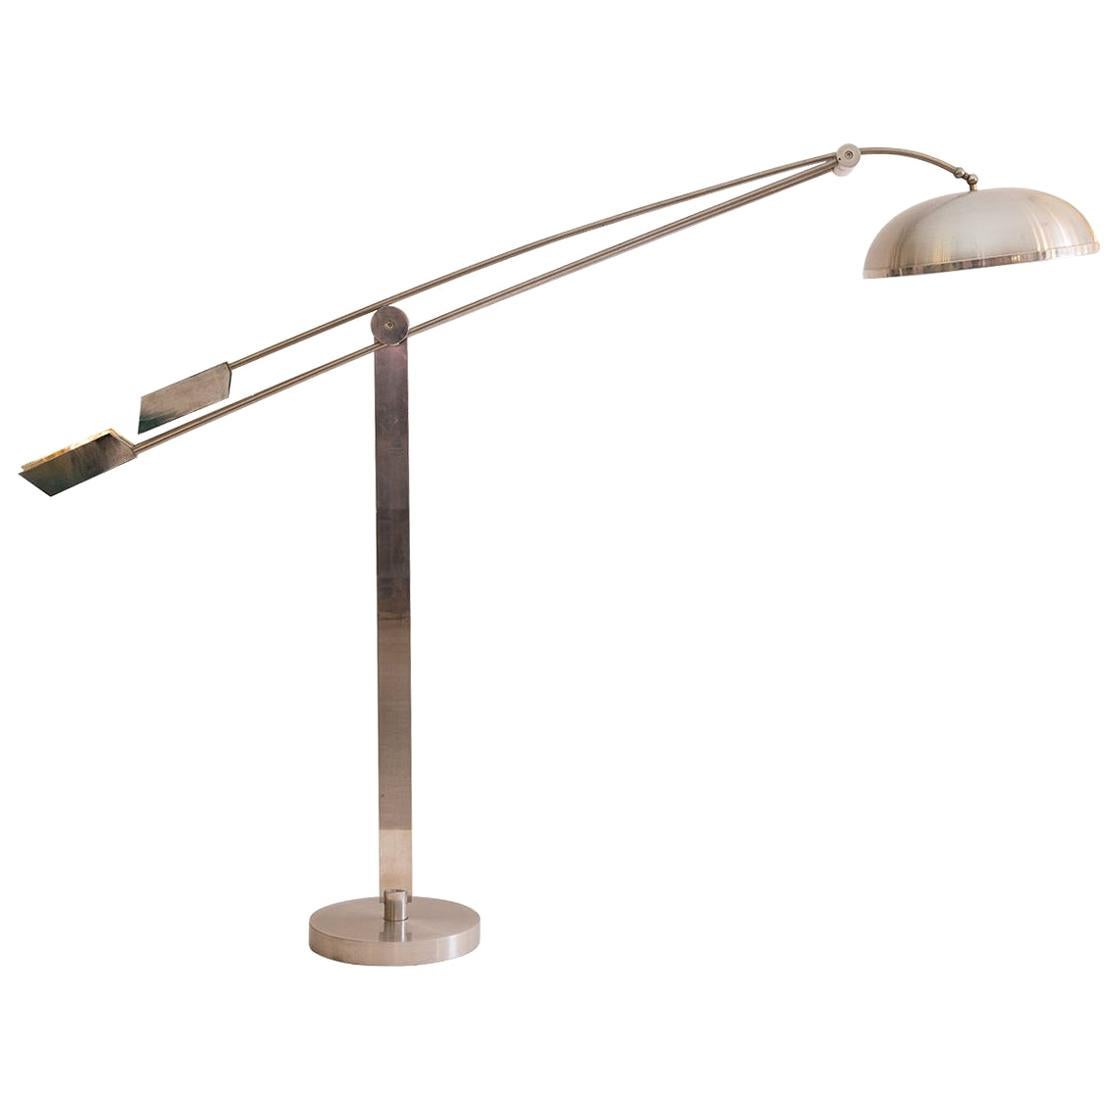 Original Art Deco Bauhaus Swiveling Aluminium Floor Lamp of the Period